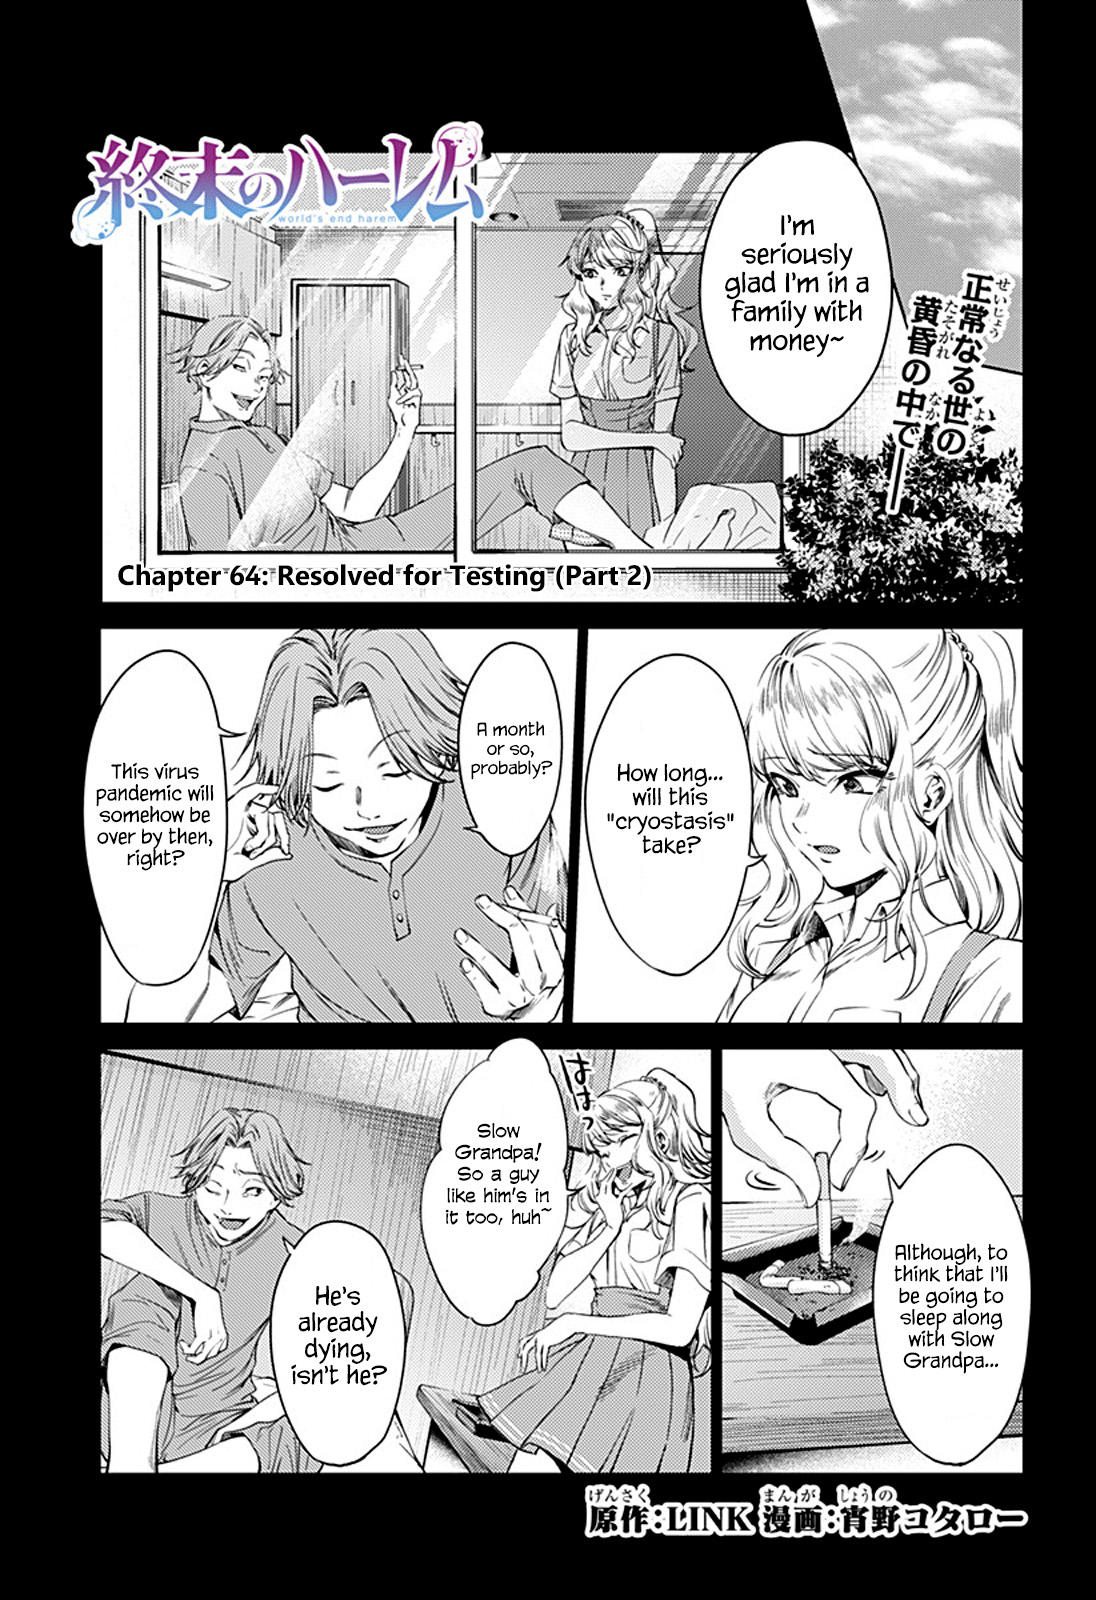 Read World's End Harem Manga on Mangakakalot